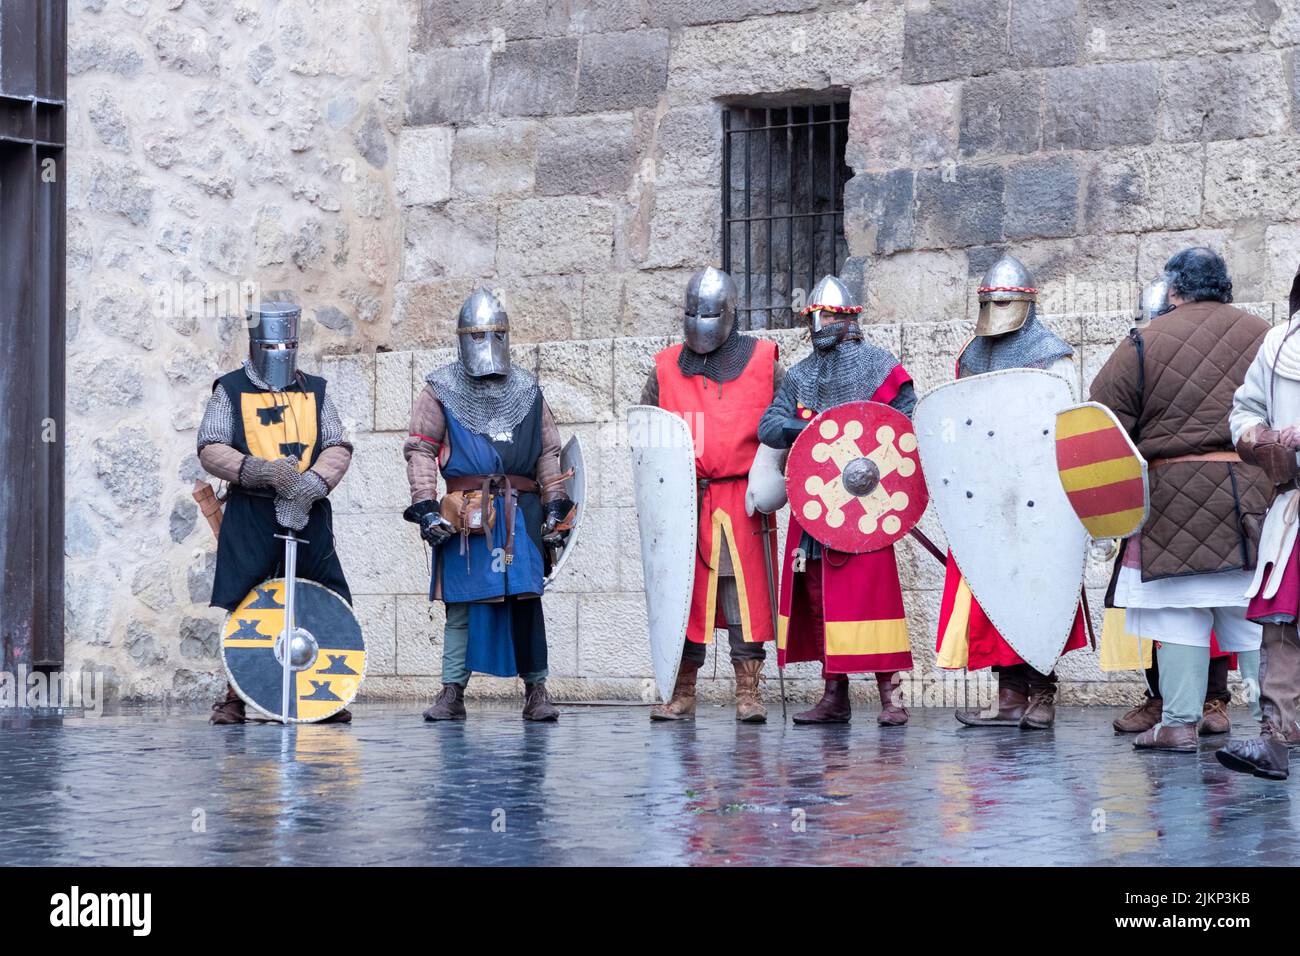 varios guerreros preparados para escenificar un combate medieval Stock Photo